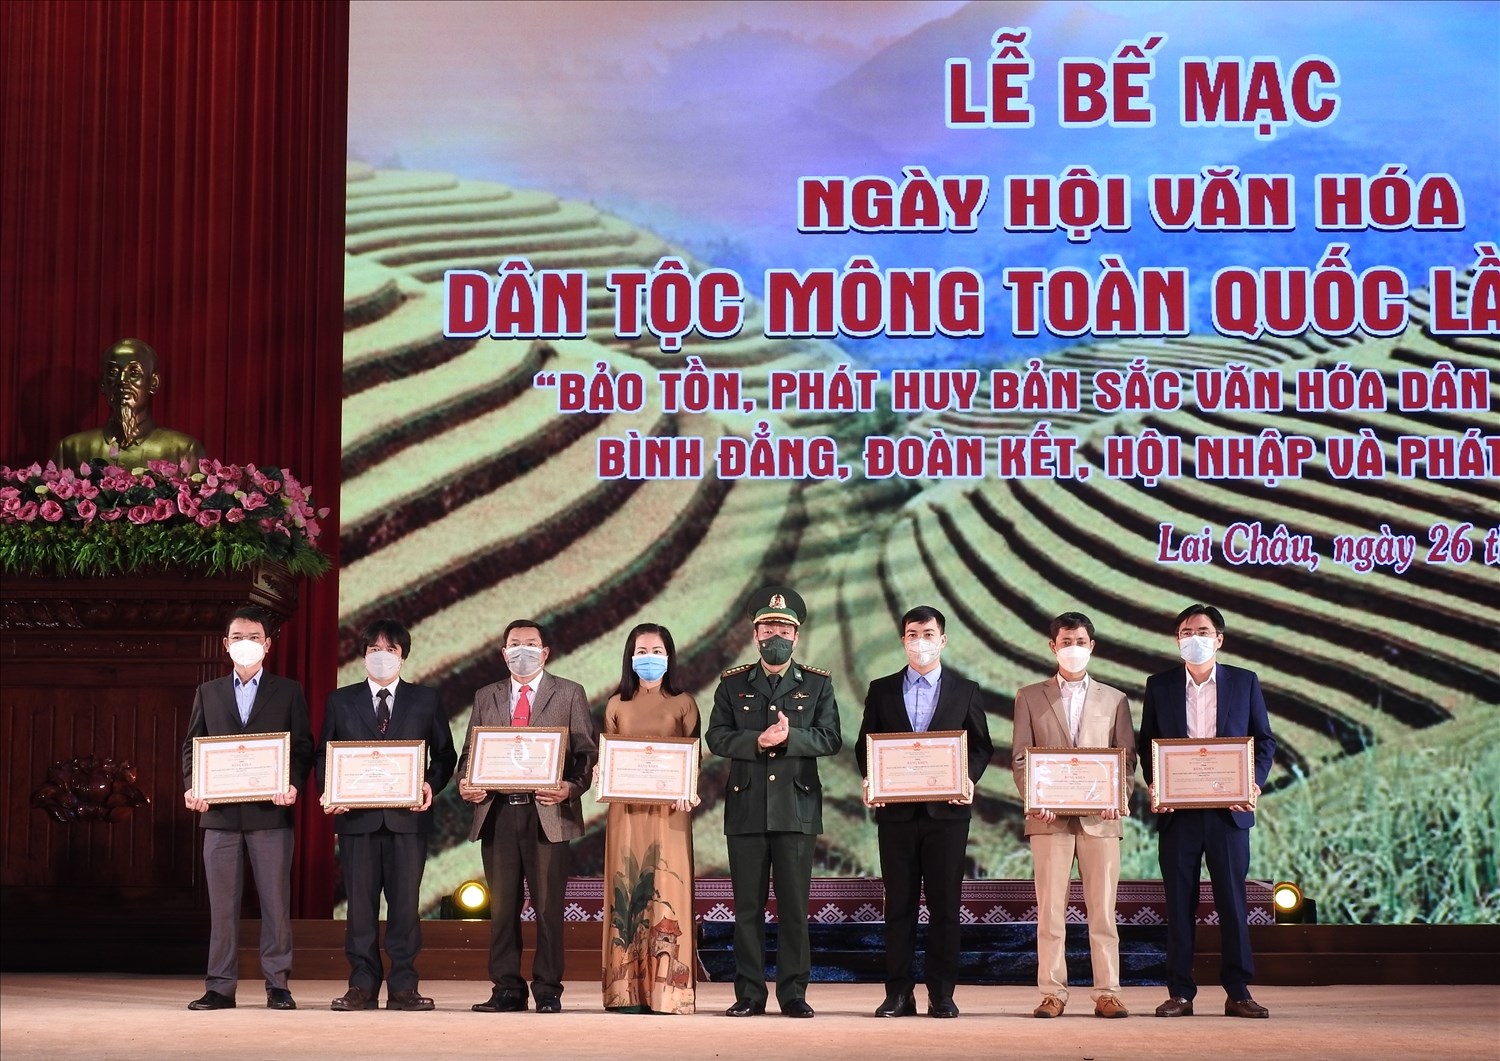 Đại tá Văn Ngọc Quế, Phó Chủ nhiệm Chính trị, Bộ Tư lệnh Bộ đội Biên phòng phòng đã tặng Bằng khen của Bộ Tư lệnh Bộ đội Biên phòng cho các tỉnh biên giới tham gia Ngày hội